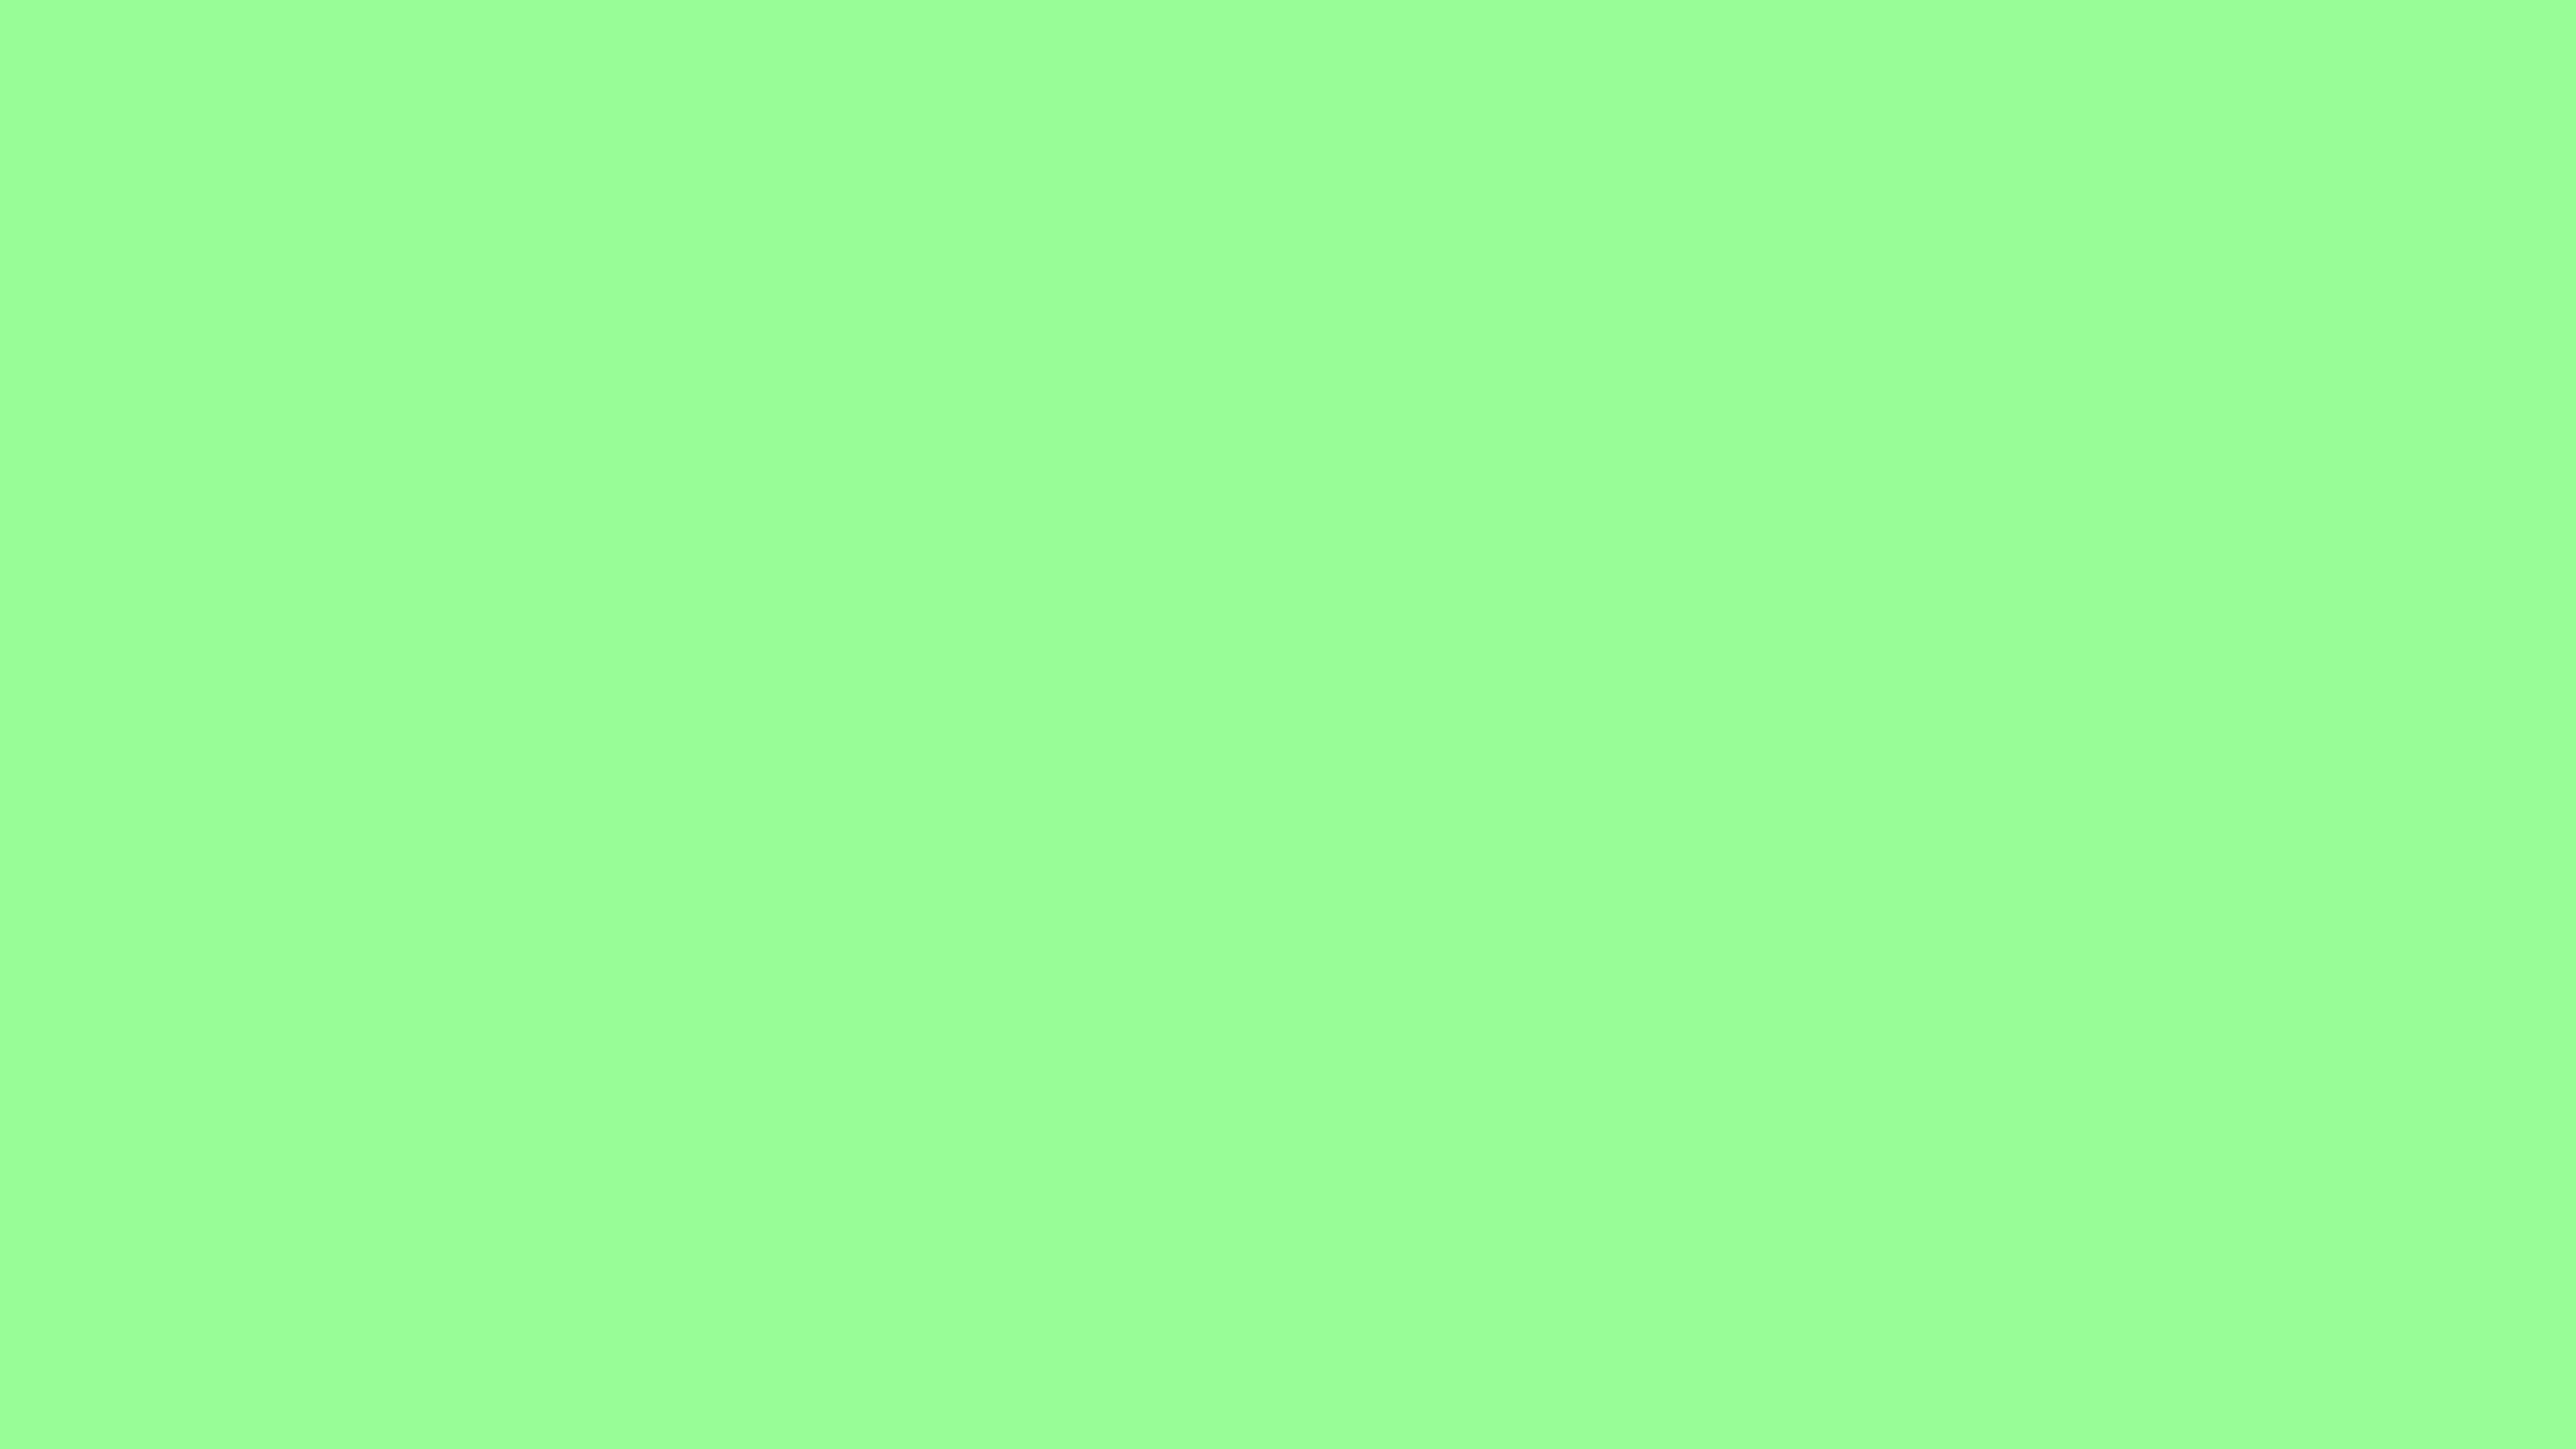 Màu xanh lá cây nhạt: Bức ảnh sử dụng gam màu xanh lá cây nhạt sẽ mang đến cho bạn cảm giác thư thái và tươi mới. Hãy nhấn vào ảnh để khám phá thêm sự tươi mới và độc đáo của gam màu này!